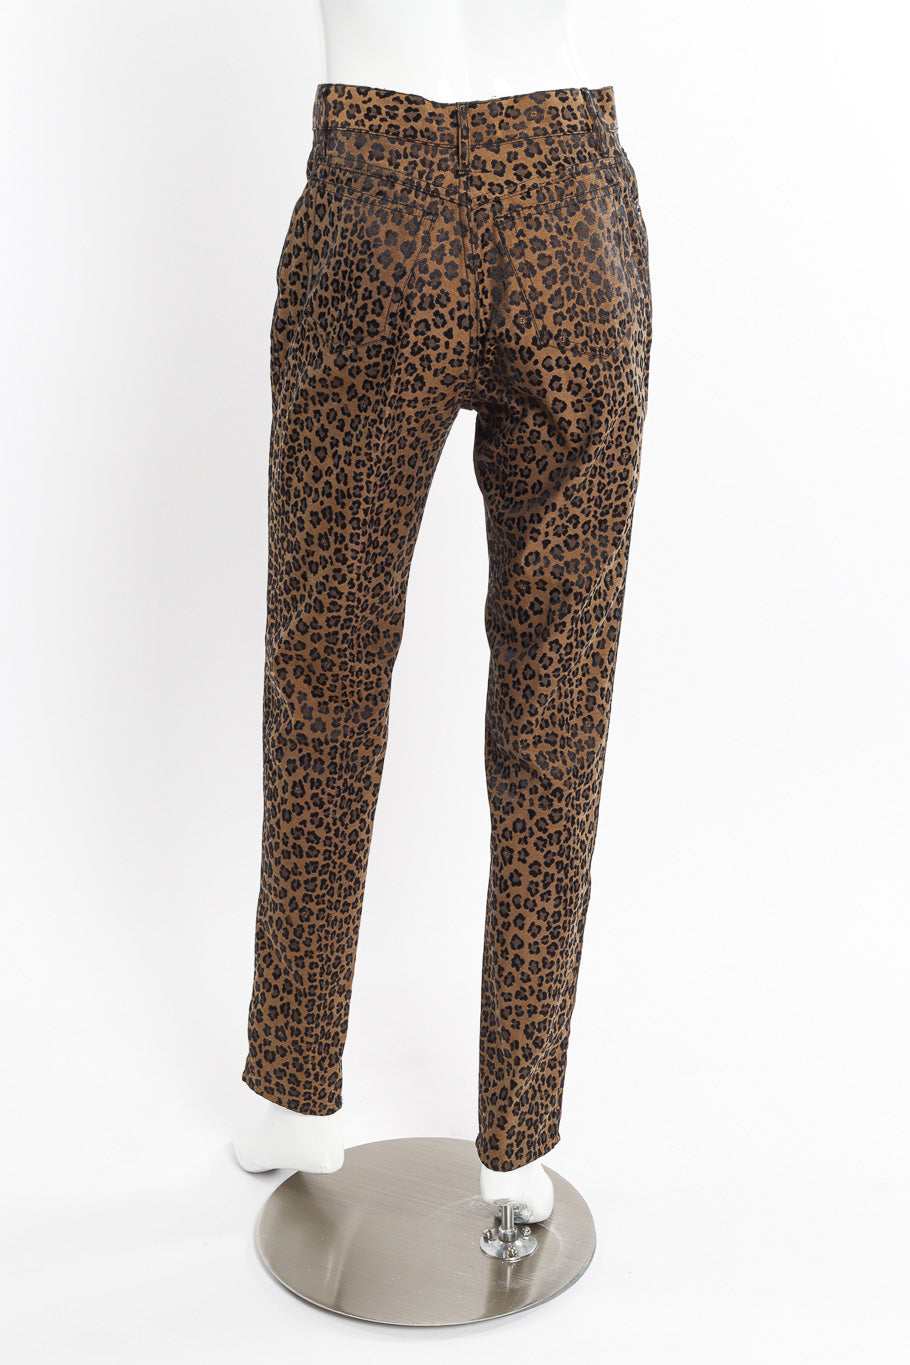 Twill Leopard Jean by Fendi on mannequin back @recessla